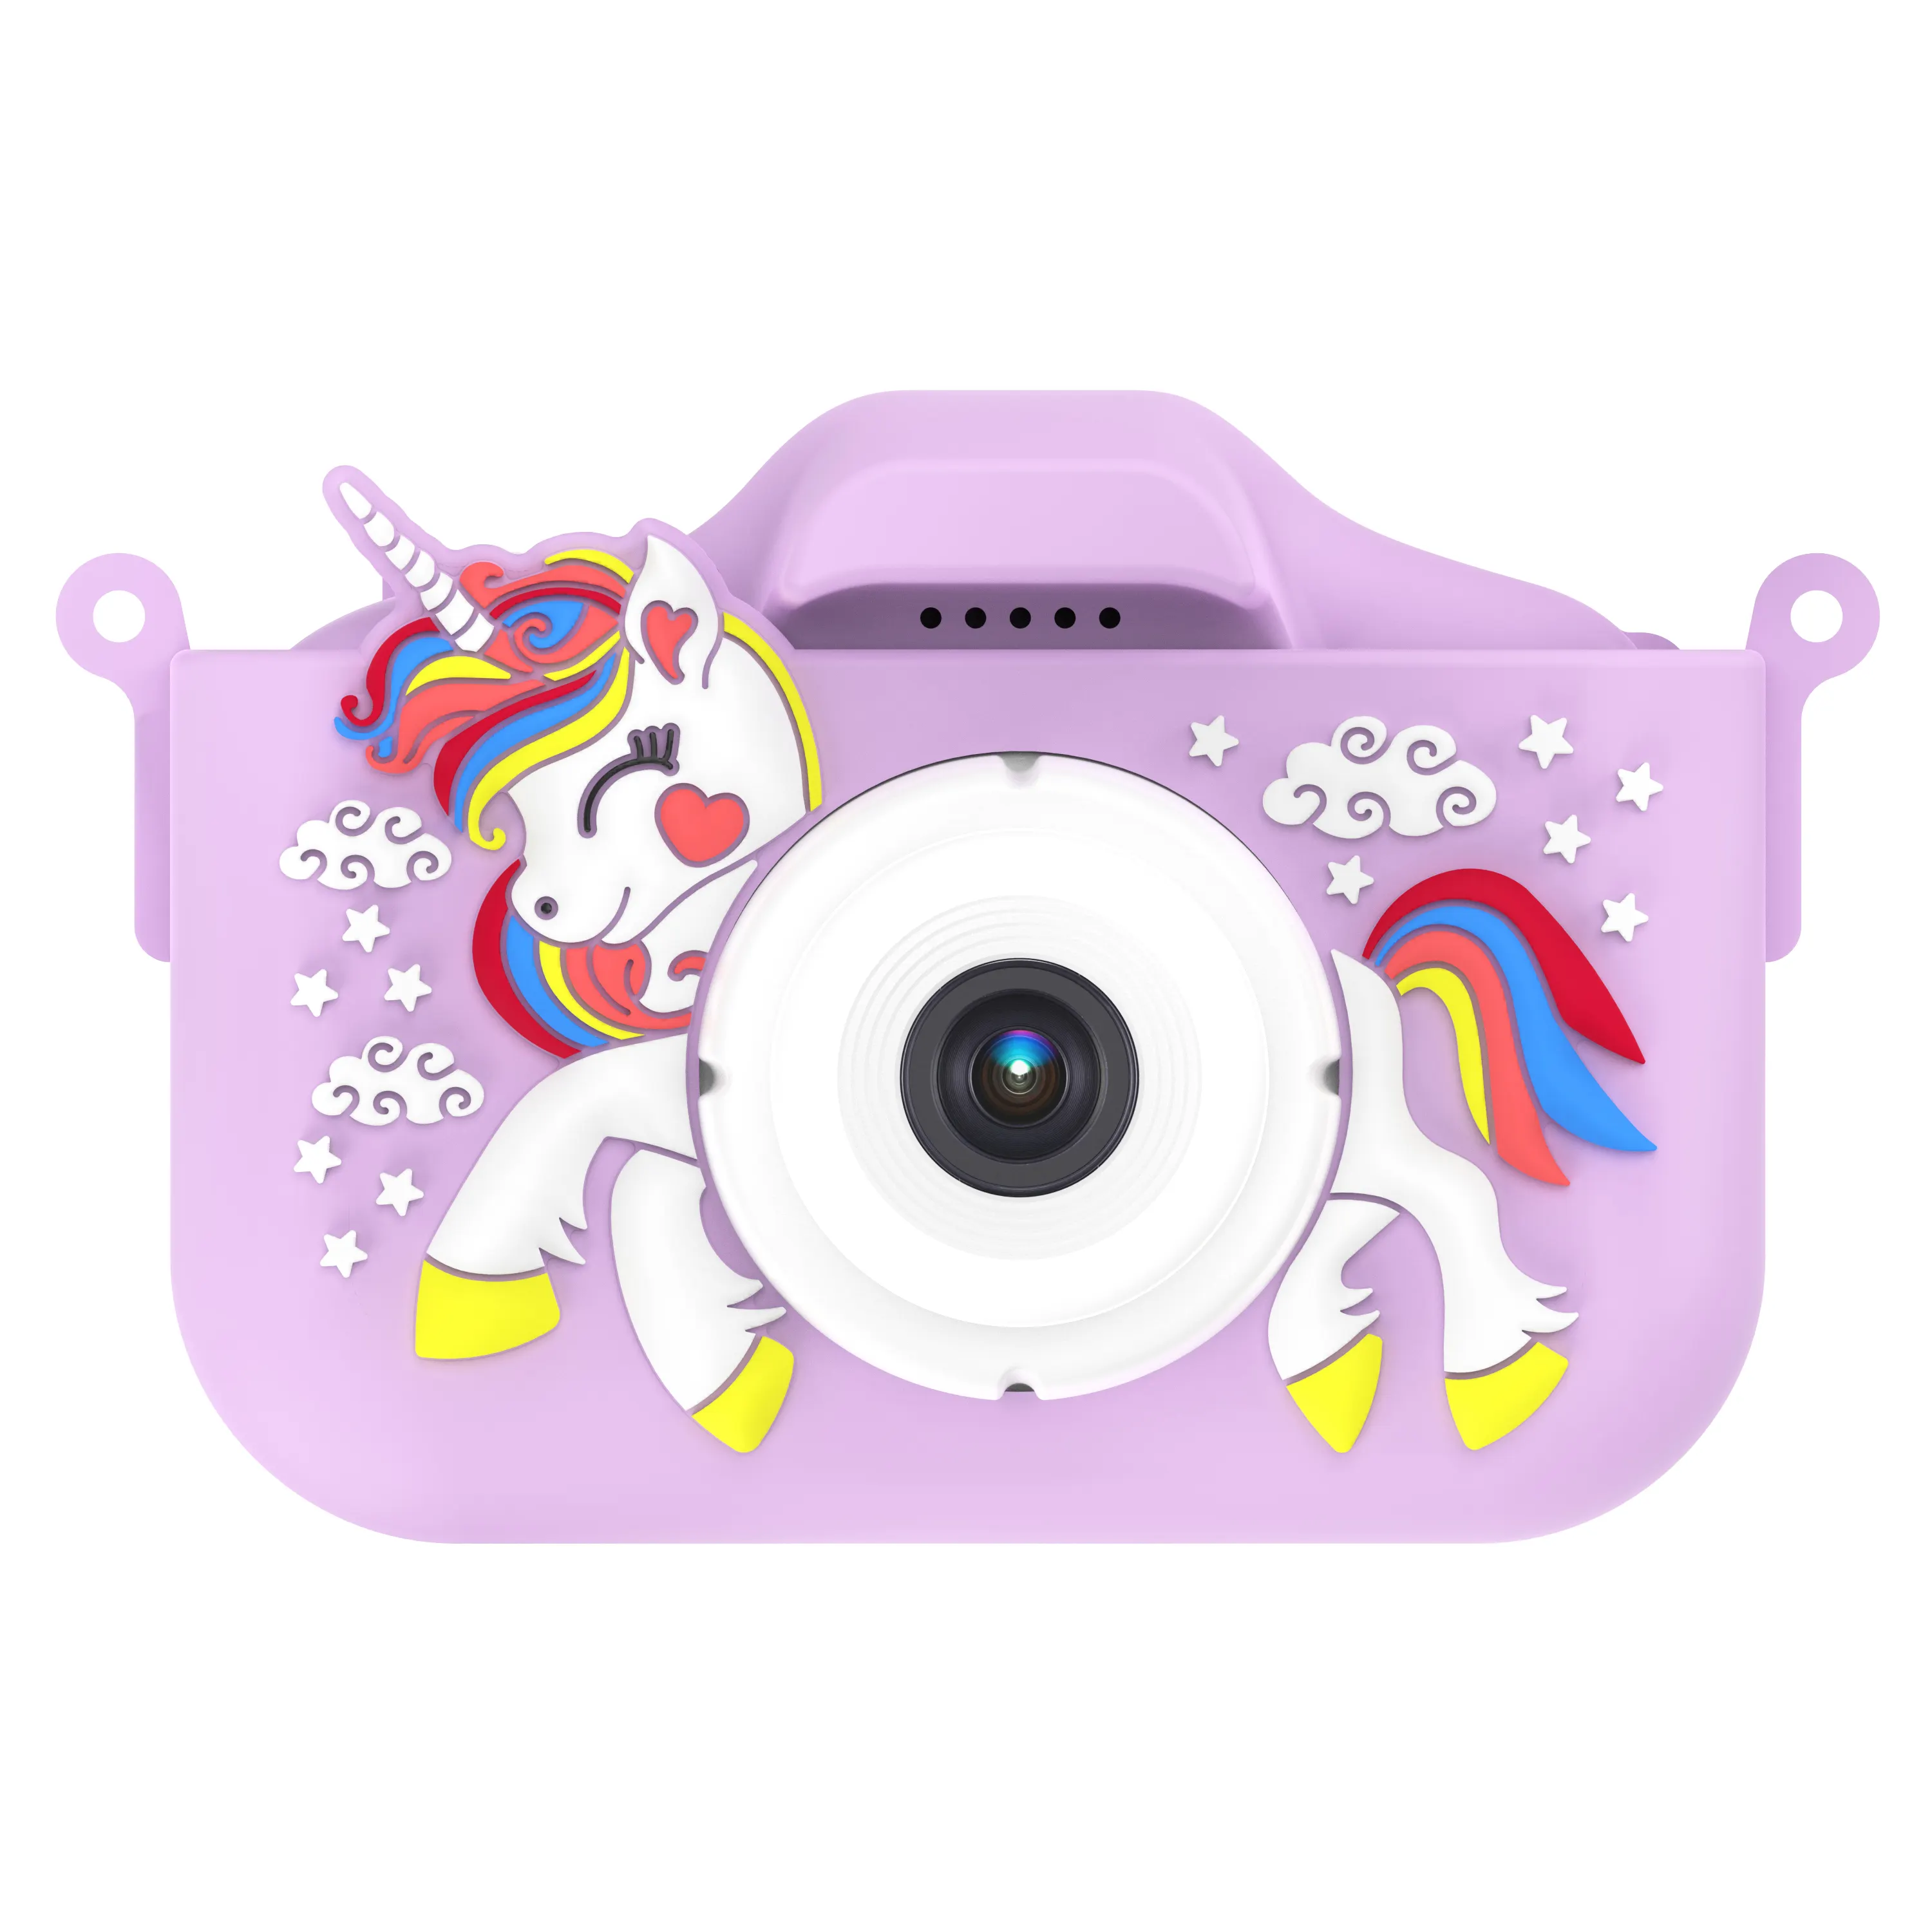 Yeni yıl hediyeleri yükseltme çocuklar için Selfie kamera noel doğum günü erkek kız çocuk dijital kamera